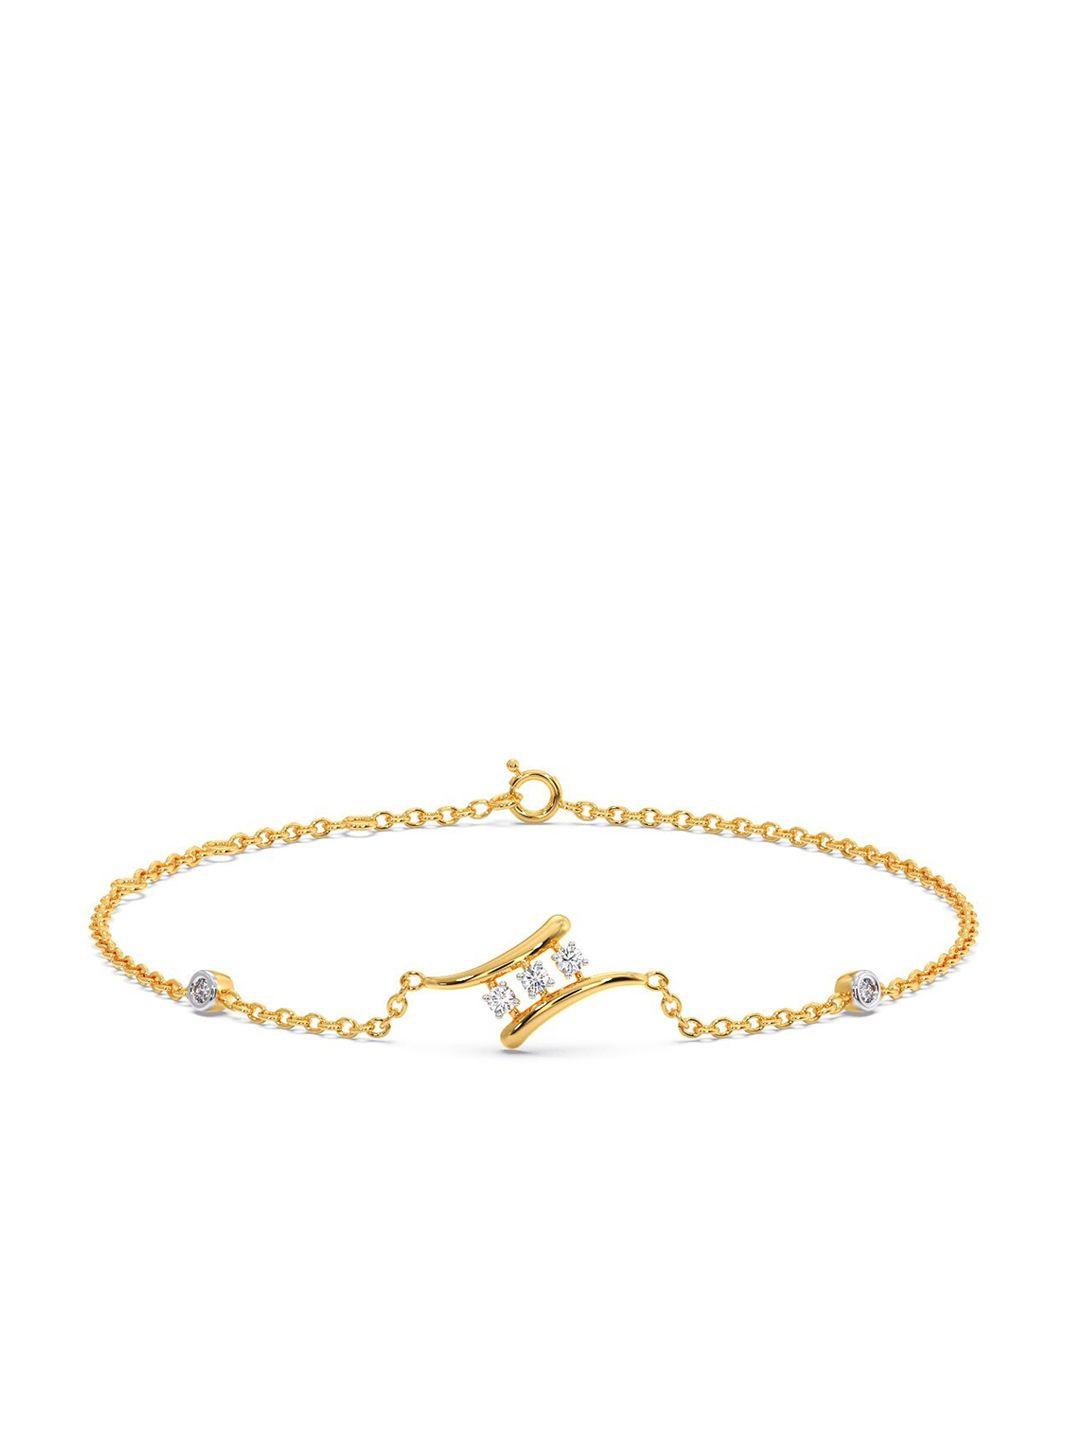 candere a kalyan jewellers company 14kt gold diamond bracelet-1.38gm